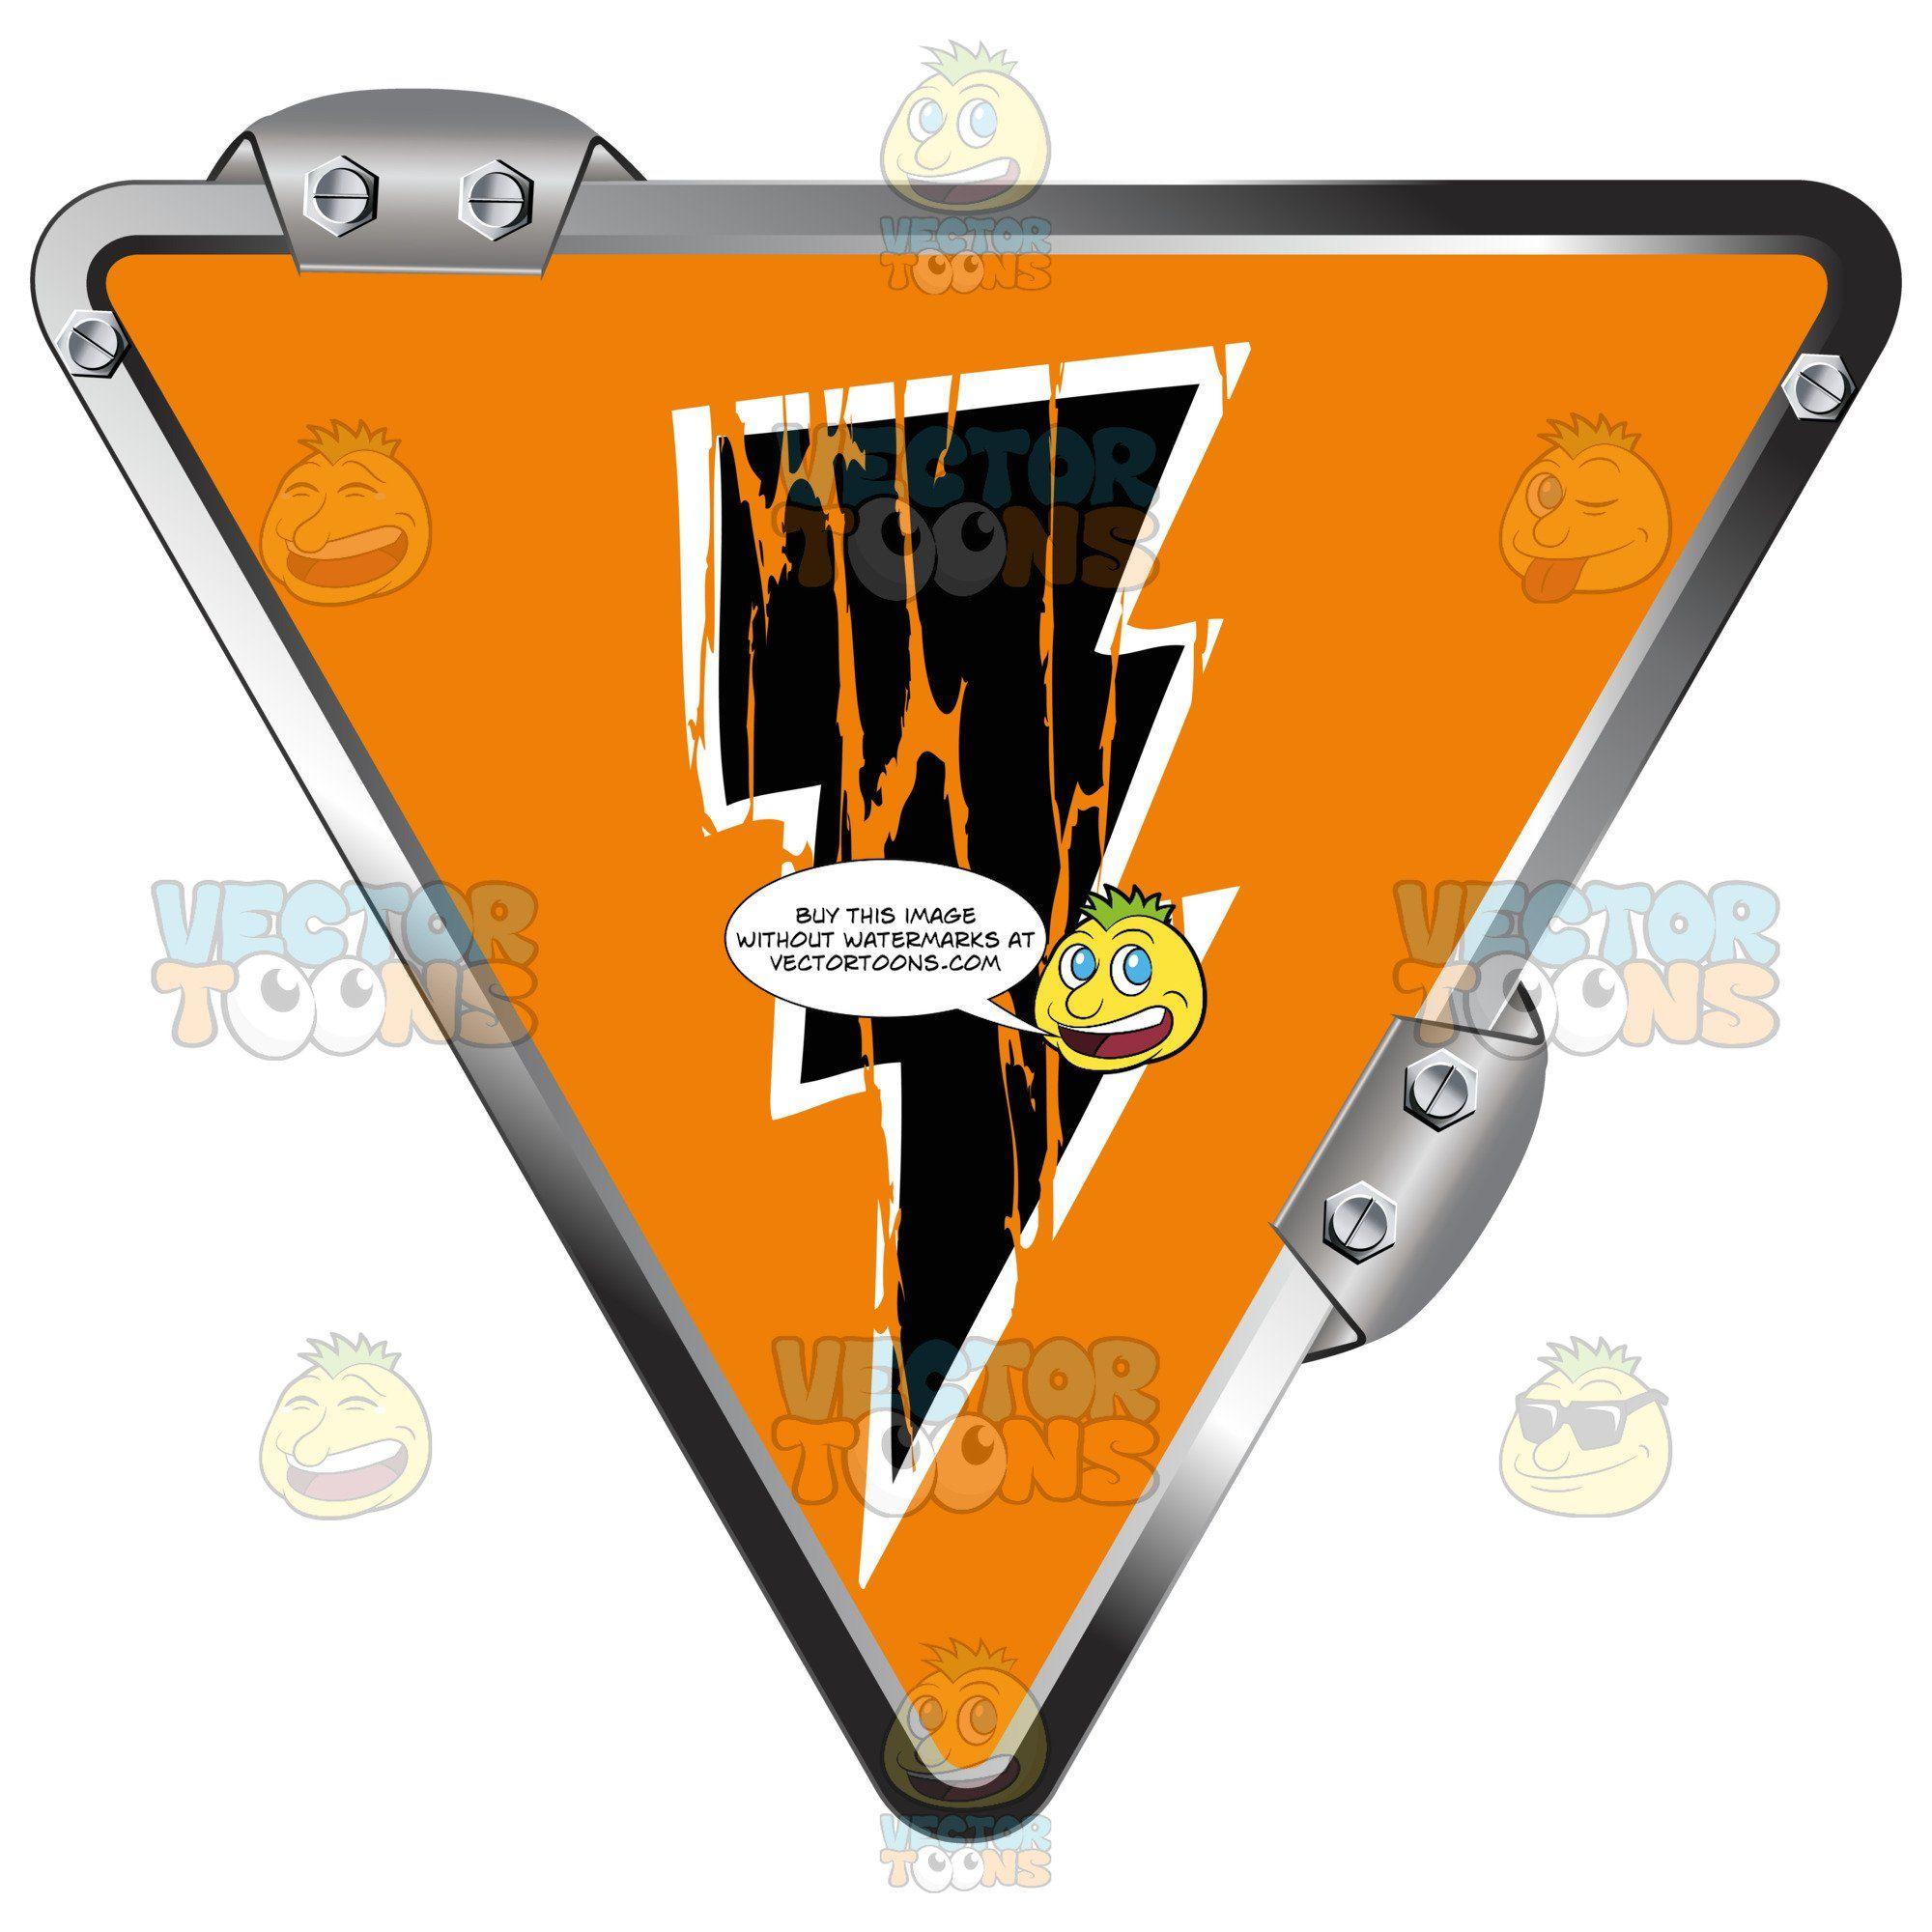 Orange Upside Down Triangle Logo - Black Lightning Bolt On Orange Inside Upside Down Grey Metal ...